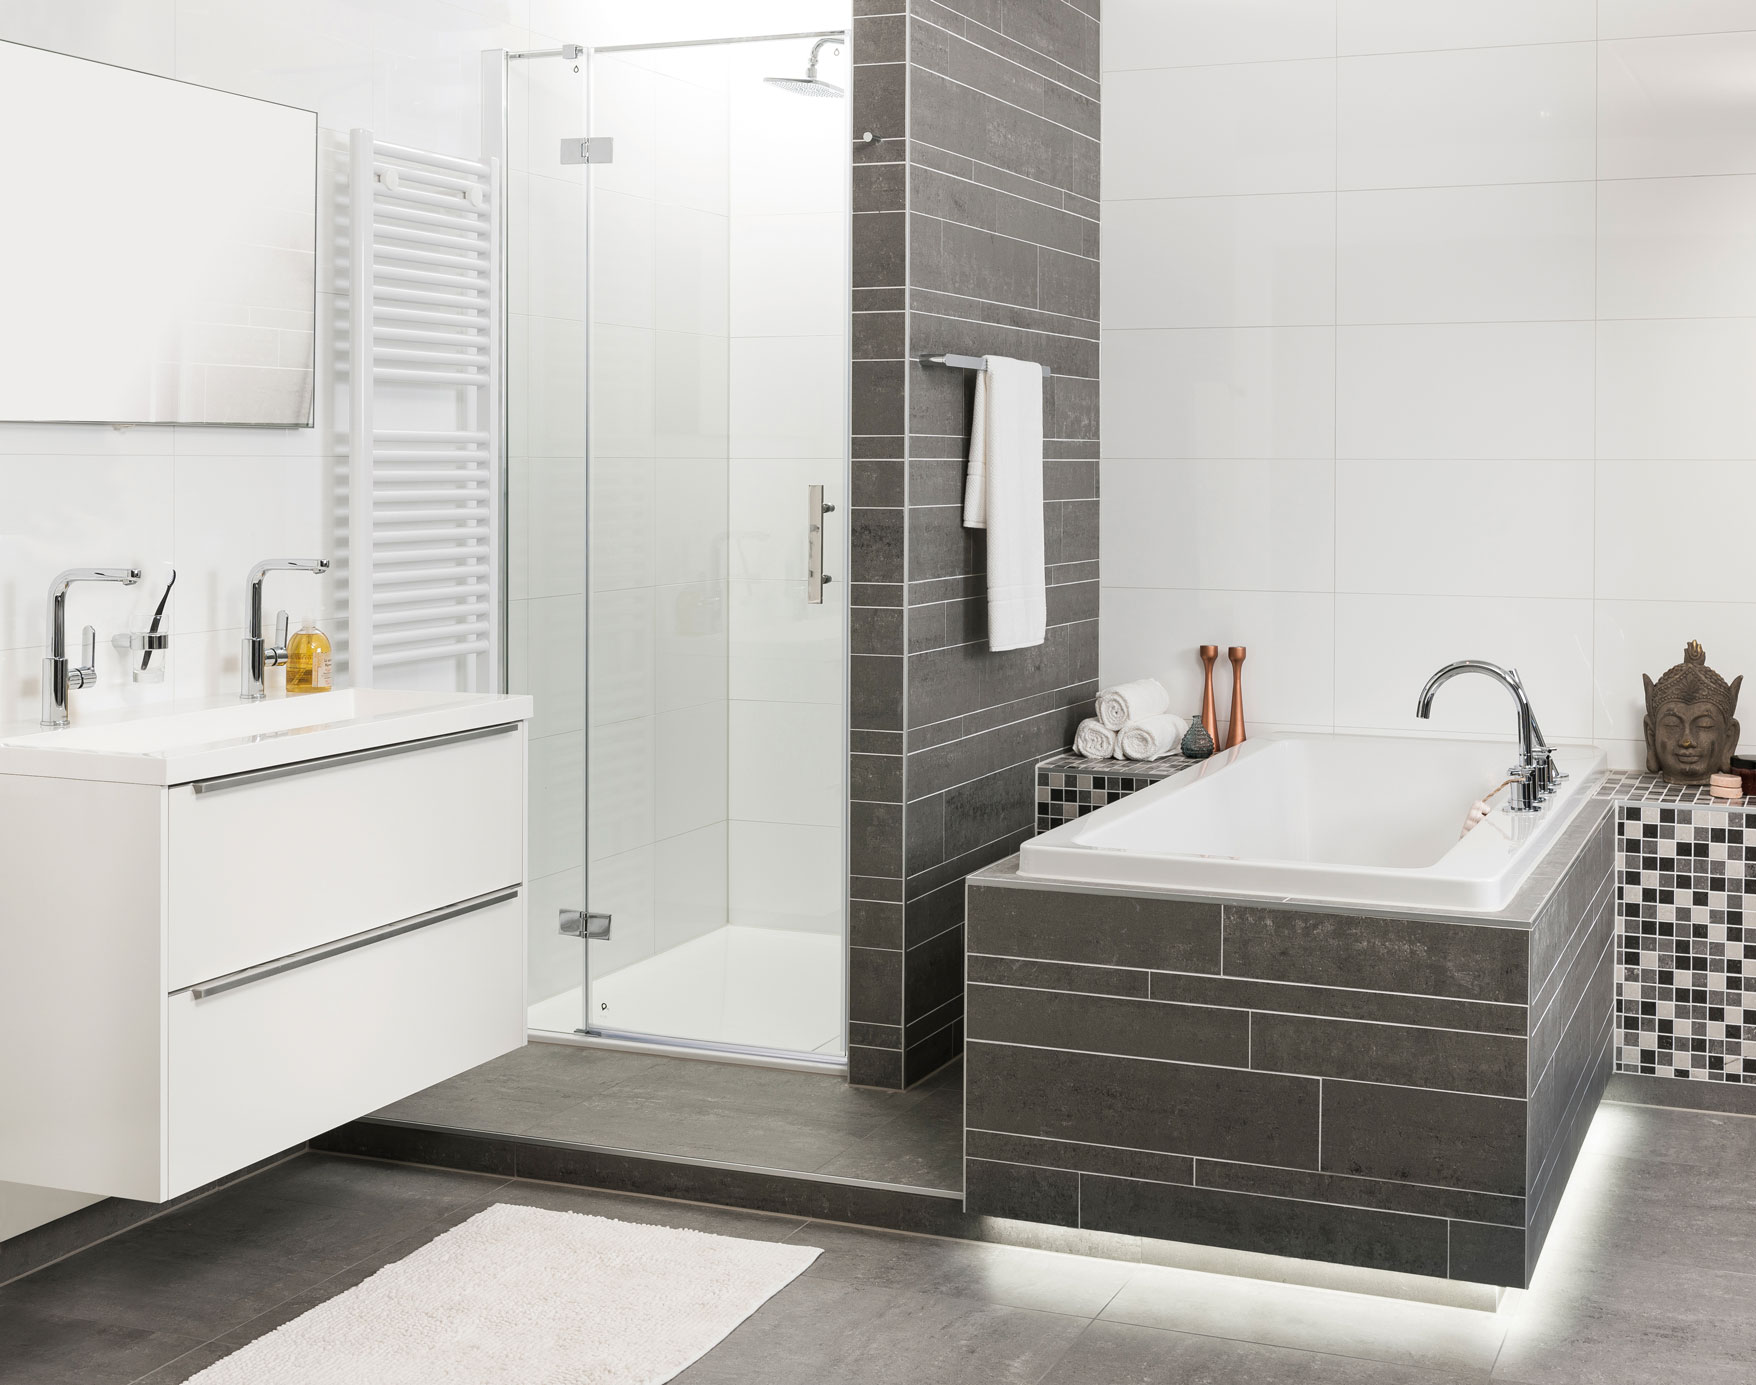 Complete badkamers elke stijl - UW-badkamer.nl